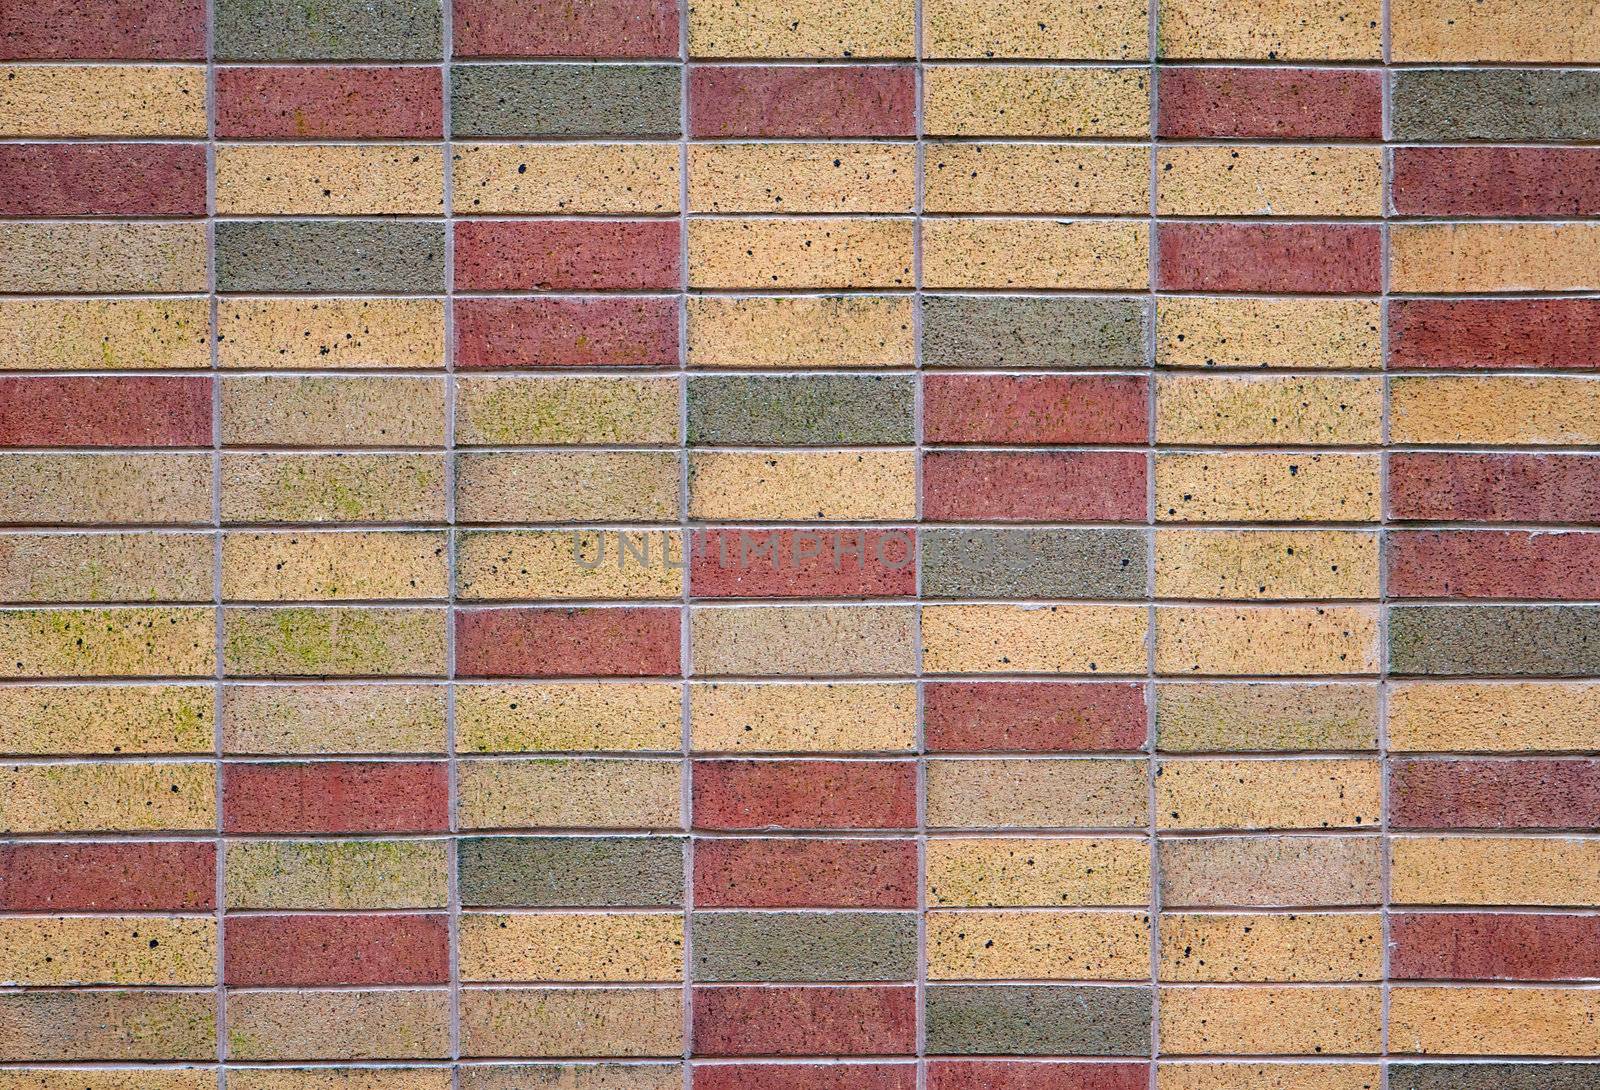 Tan red and green bricks by bobkeenan